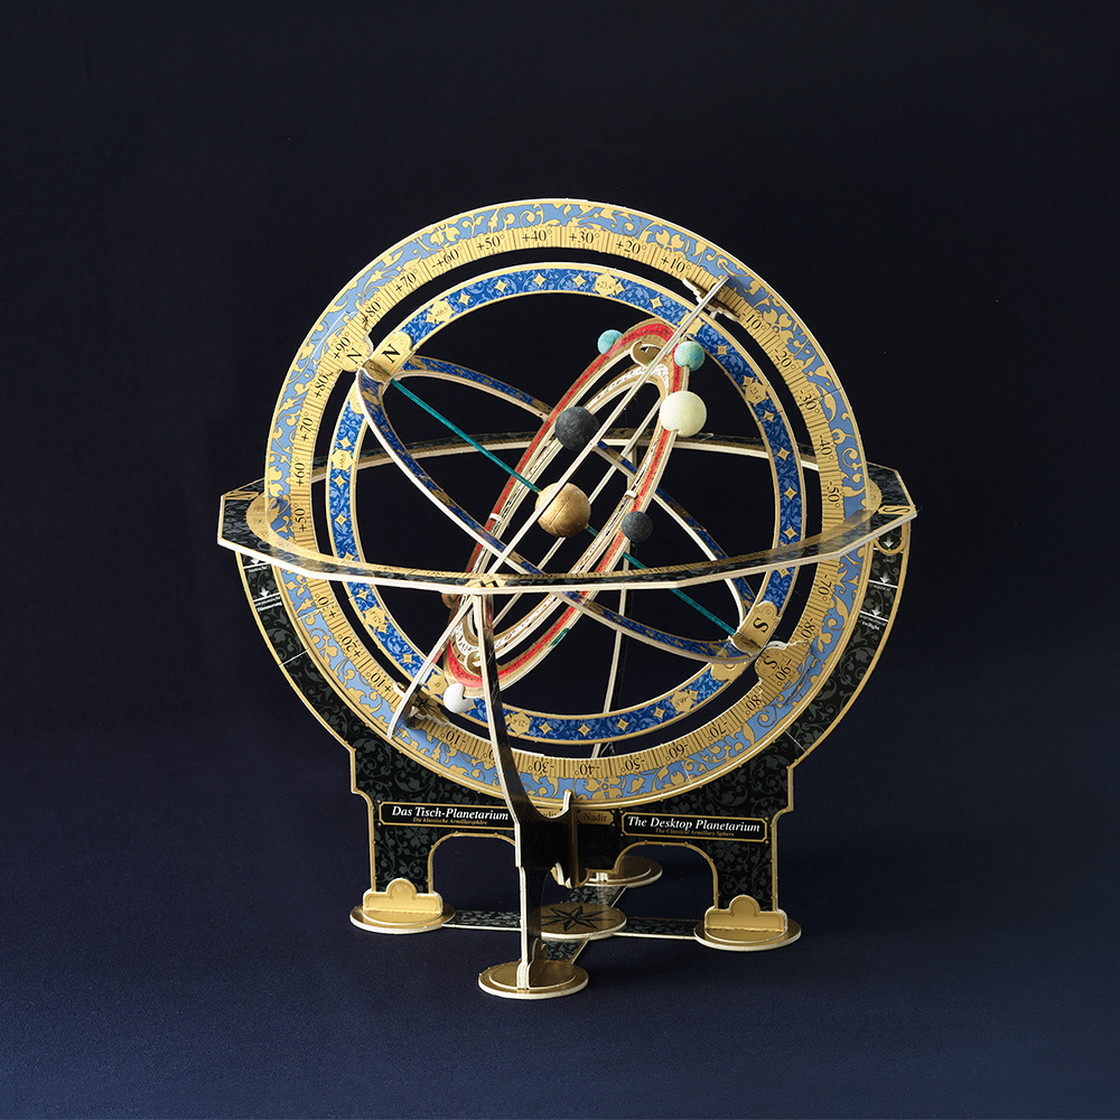 Le planétarium de table - AstroMedia